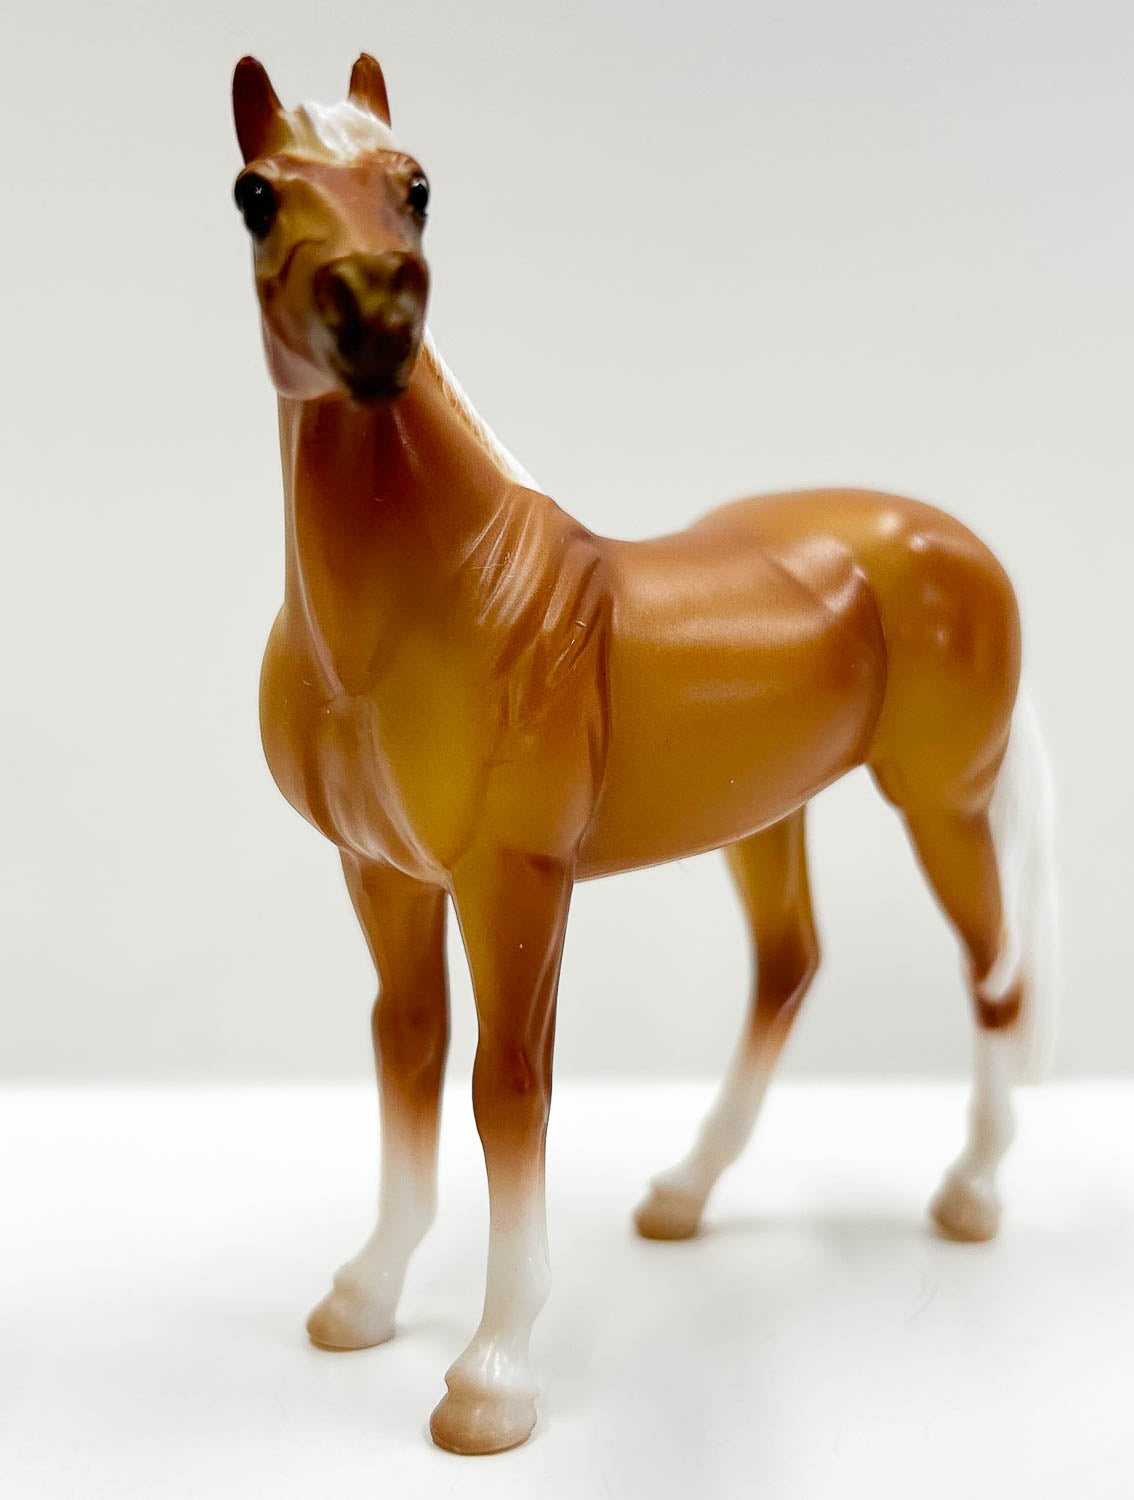 Standing Stock Horse, Palomino